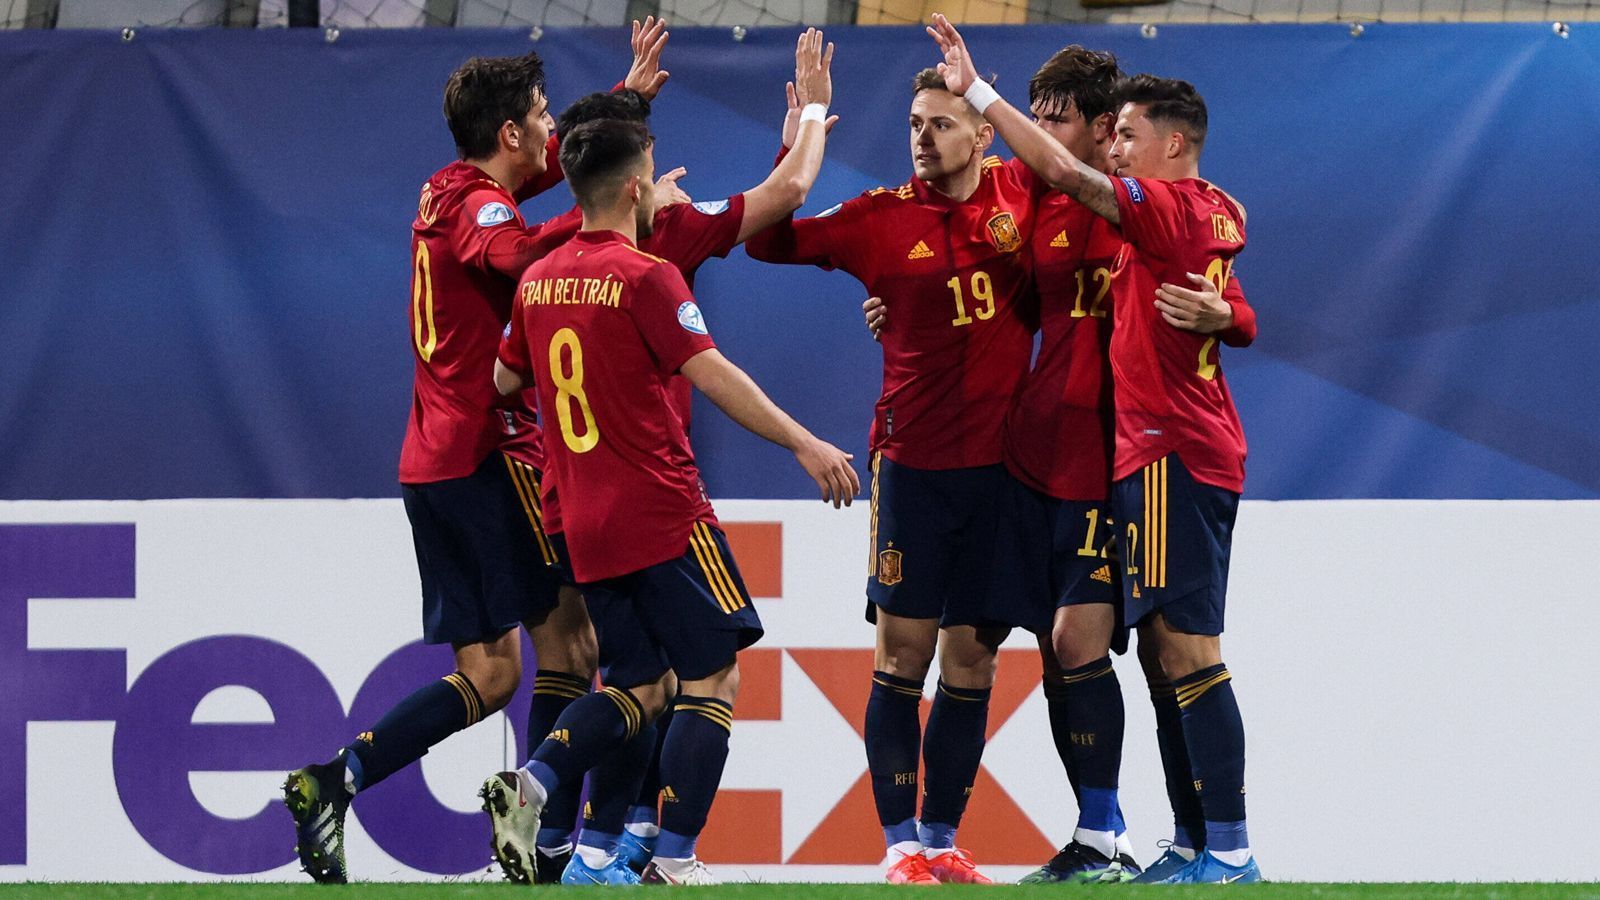 
                <strong>Spanien </strong><br>
                Der Titelverteidiger hat eine starke Vorrunde hingelegt und den 1. Platz der Gruppe B belegt. Besonders die Verteidigung der Spanier hat überzeugt: In drei Gruppenspielen gab es keinen einzigen Gegentreffer. Gegen Slowenien gewannen die Spanier mit 3:0, gegen Tschechien mit einem 2:0. Lediglich gegen Italien gab es ein torloses Unentschieden. Der effektivste Torjäger von Spanien war Dani Gomez von Levante mit zwei Treffern.
              